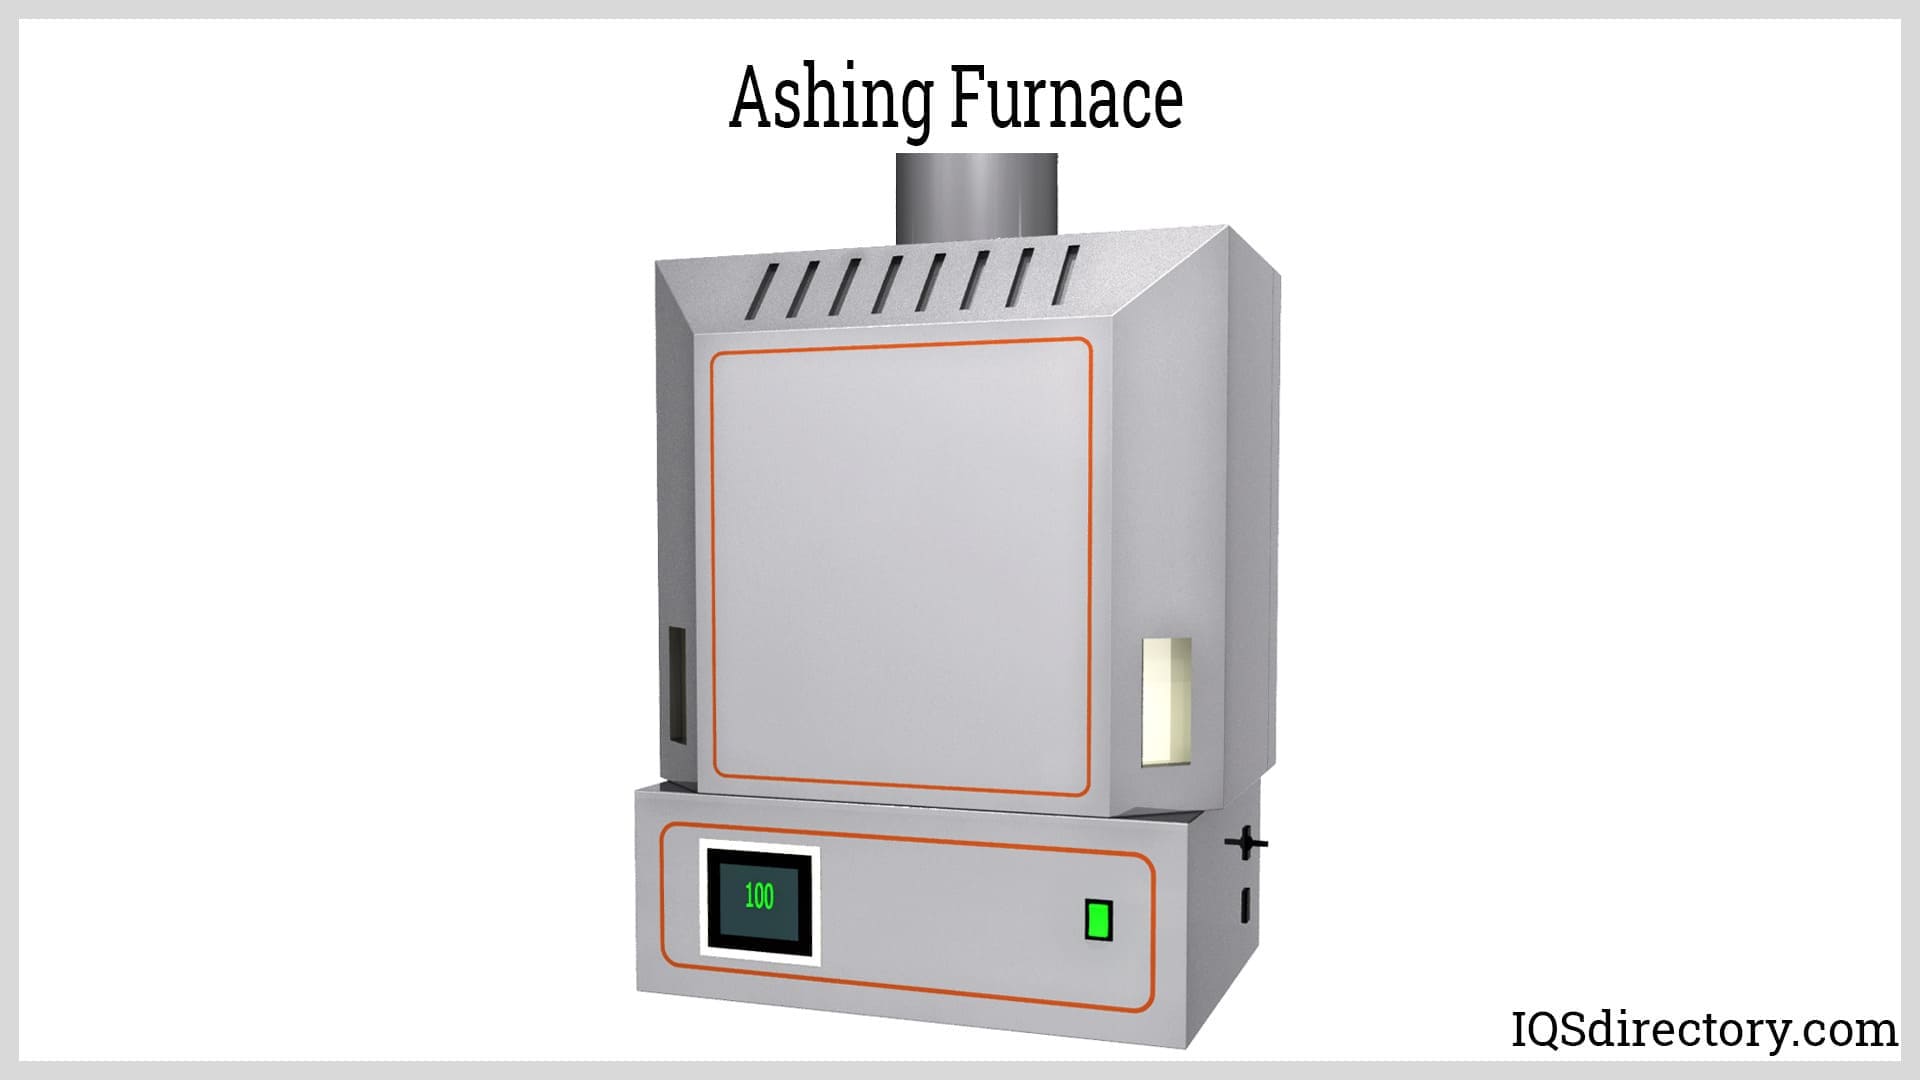 Ashing Furnace